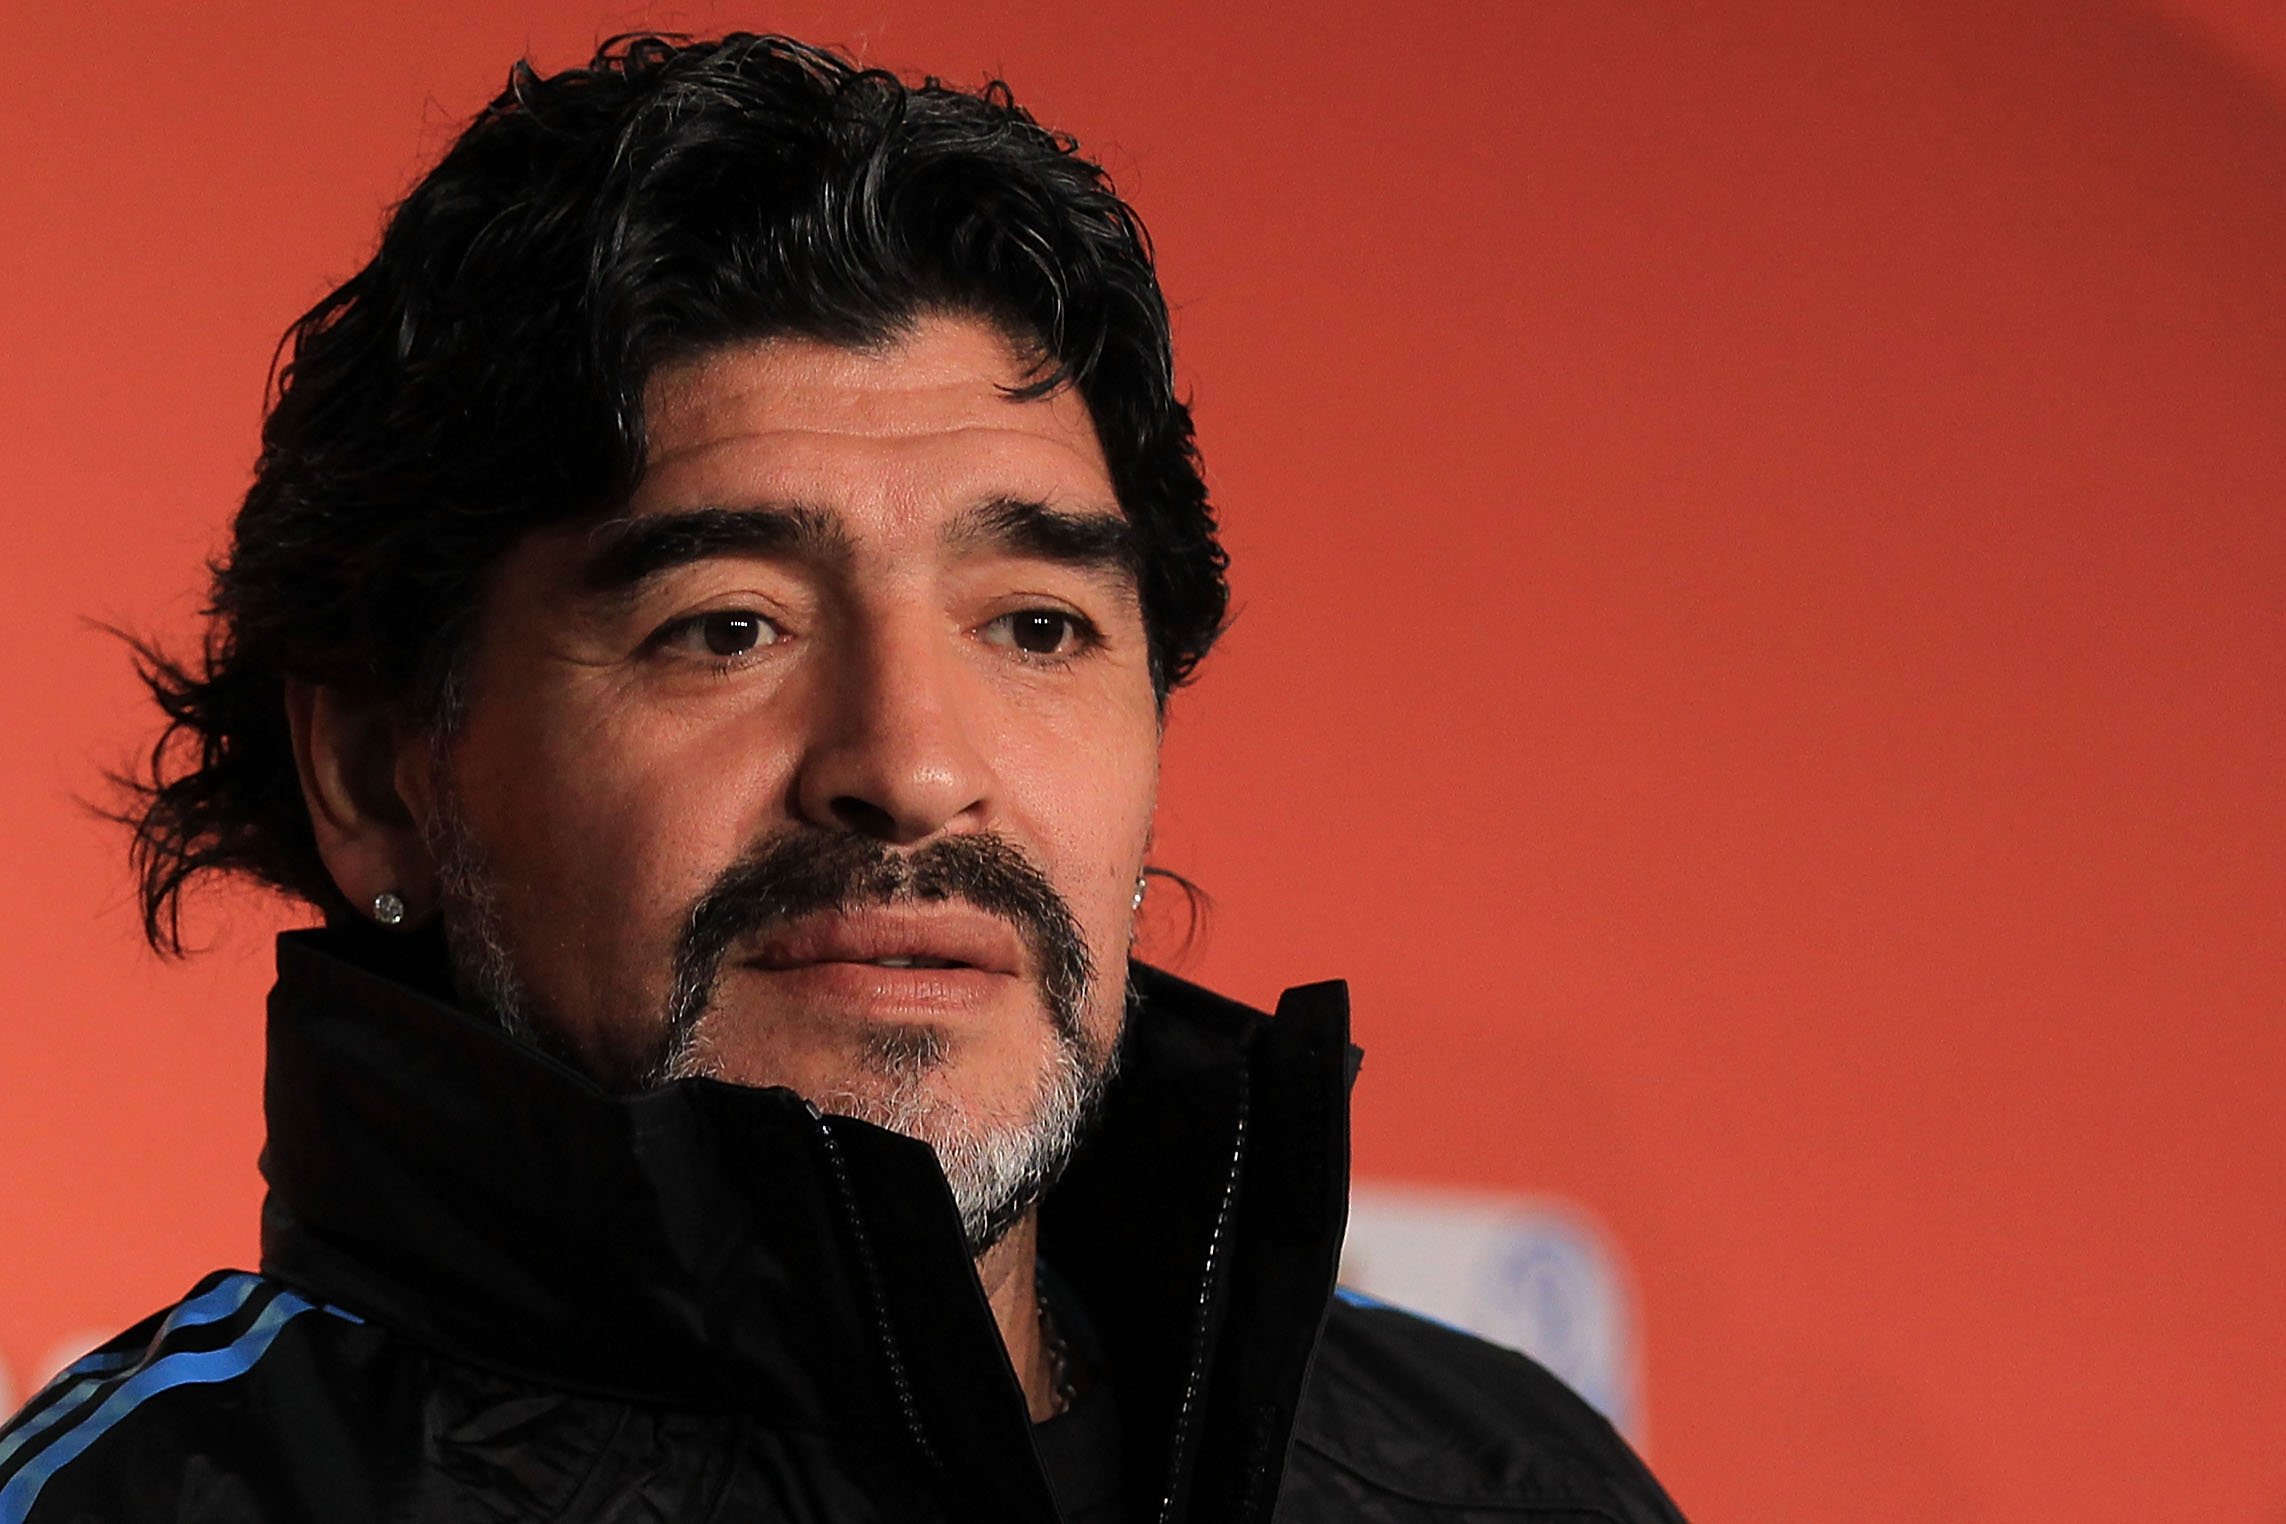 Diego Maradona spricht zu den Medien während einer Pressekonferenz in der Green Point Arena am 2. Juli 2010 in Kapstadt, Südafrika | Quelle: Chris McGrath/Getty Images